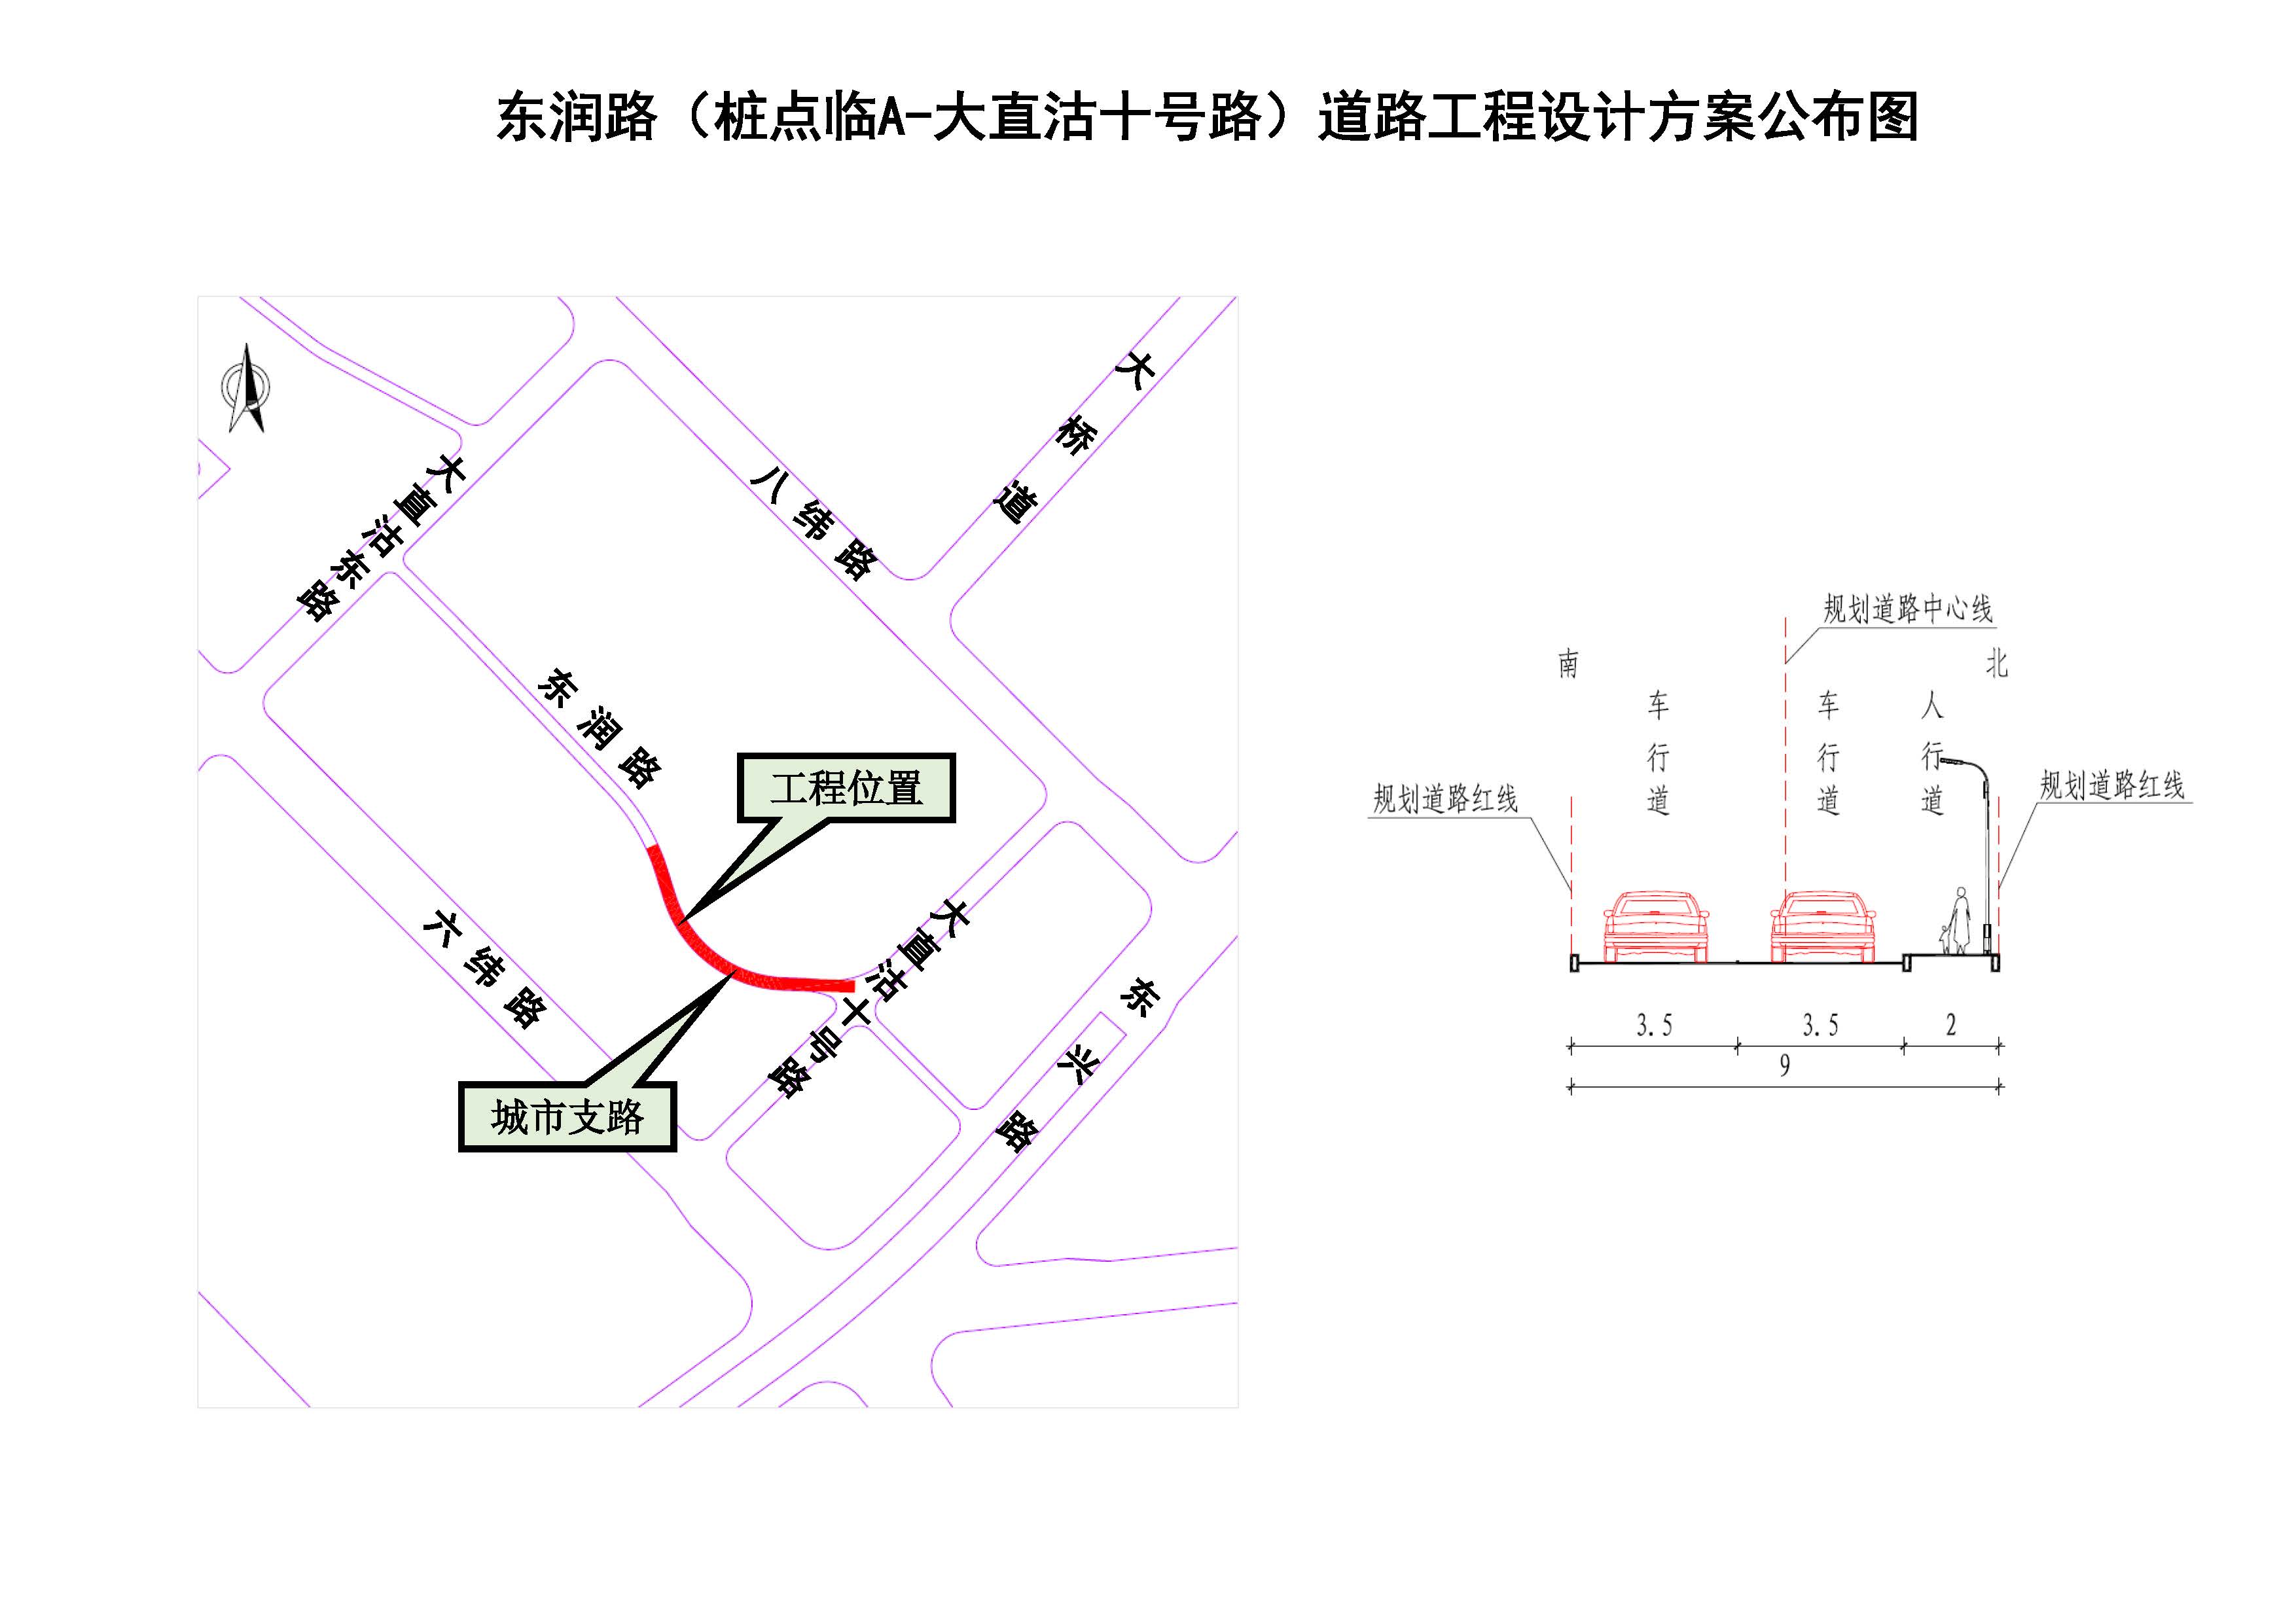 大竹中学周边道路规划图片